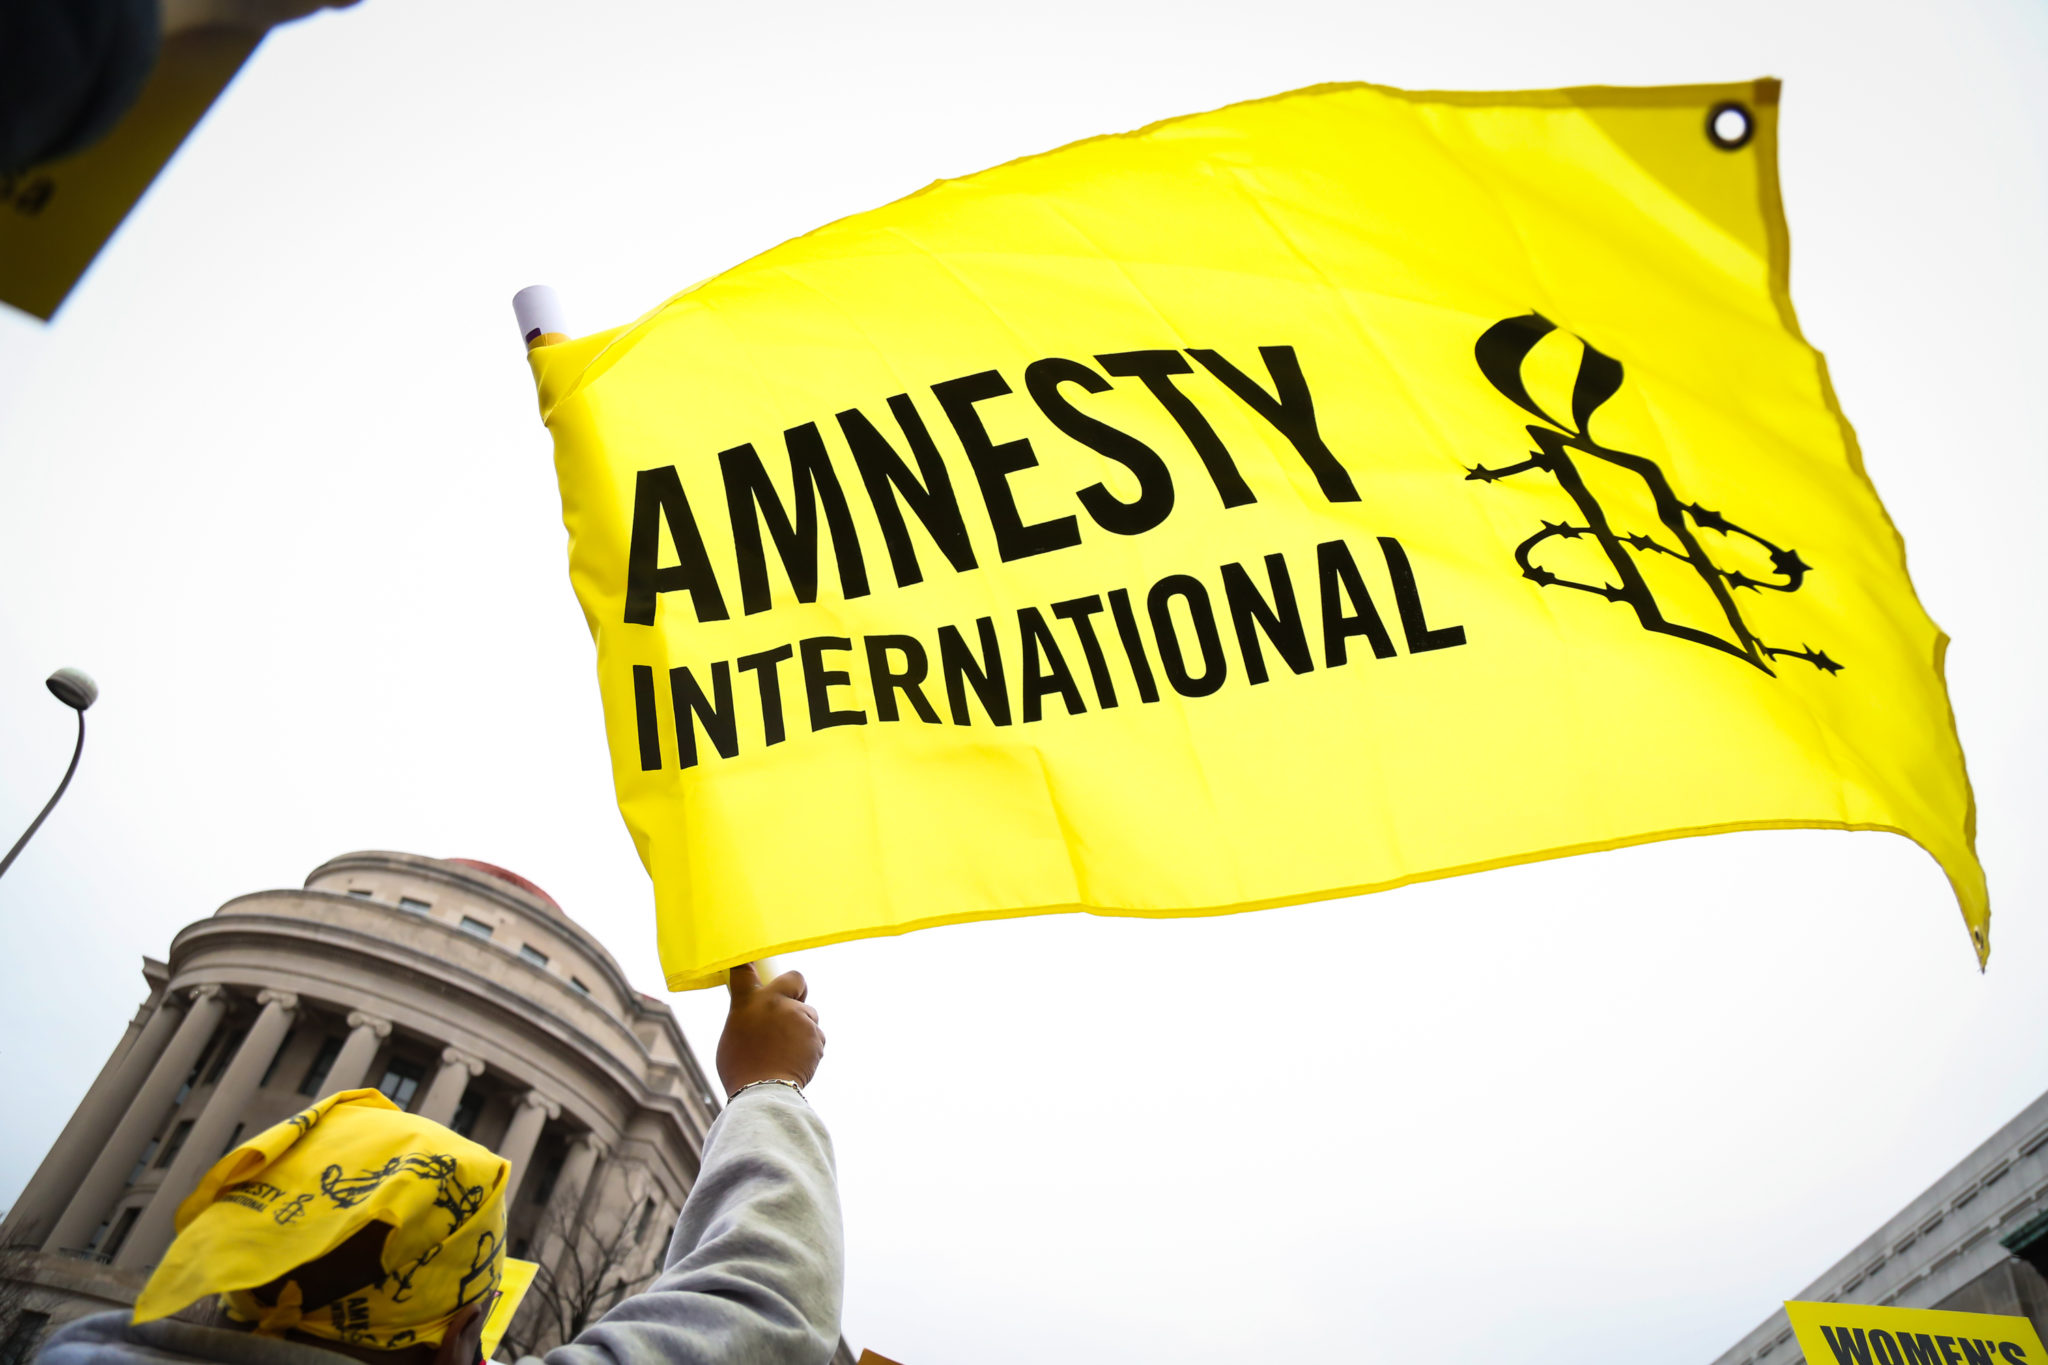 Хүний эрхийг хамгаалах Эмнести интернэшнлээс Вэйсел Акчайгн талаар мэдэгдэл гаргалаа